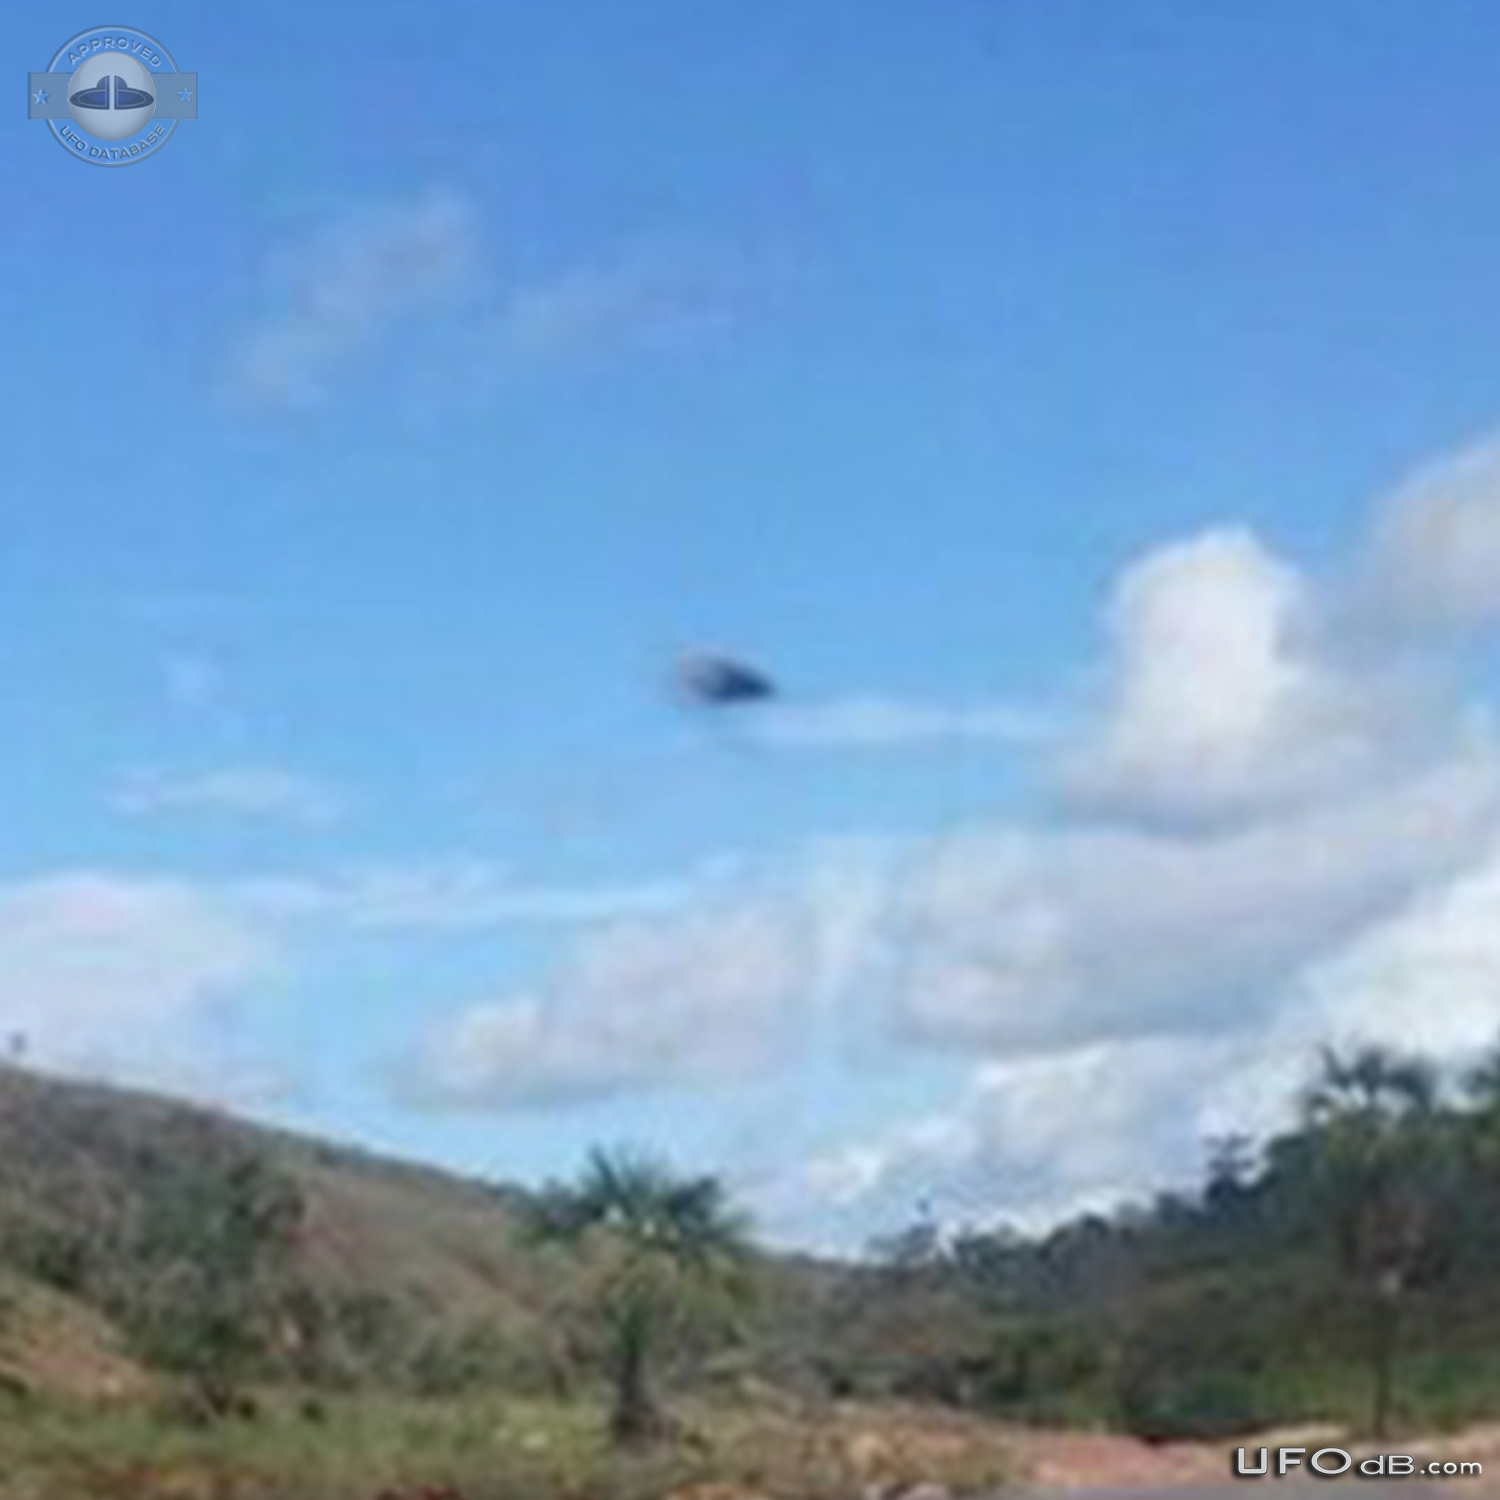 UFO in Raposa Serra do Sol, Roraima in Brazil - July 12 2014 UFO Picture #591-3